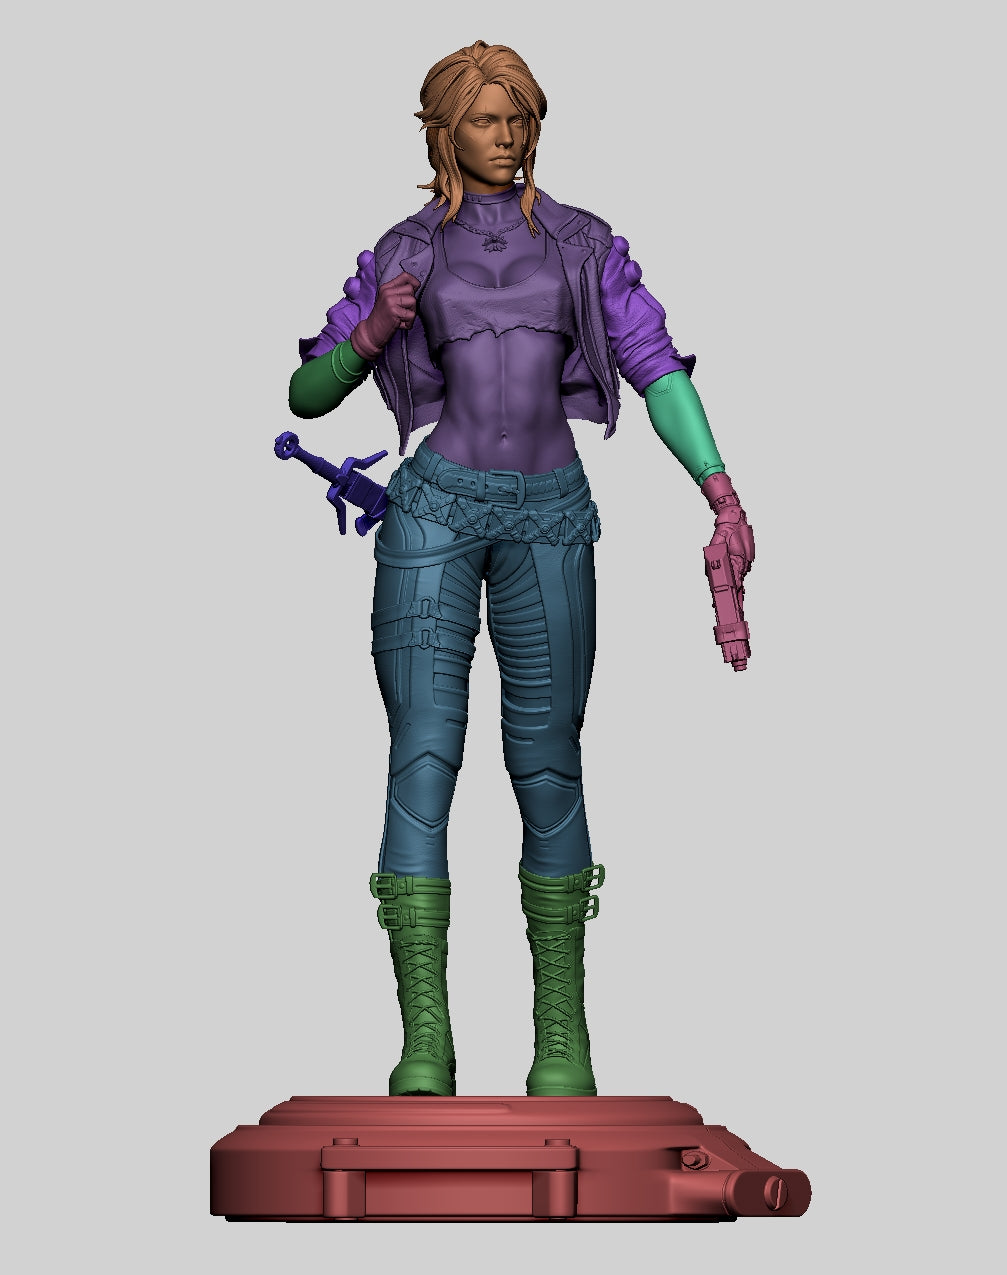 Cyberpunk Ciri wydrukowana w 3D miniaturowa statua w skali SFW NSFW